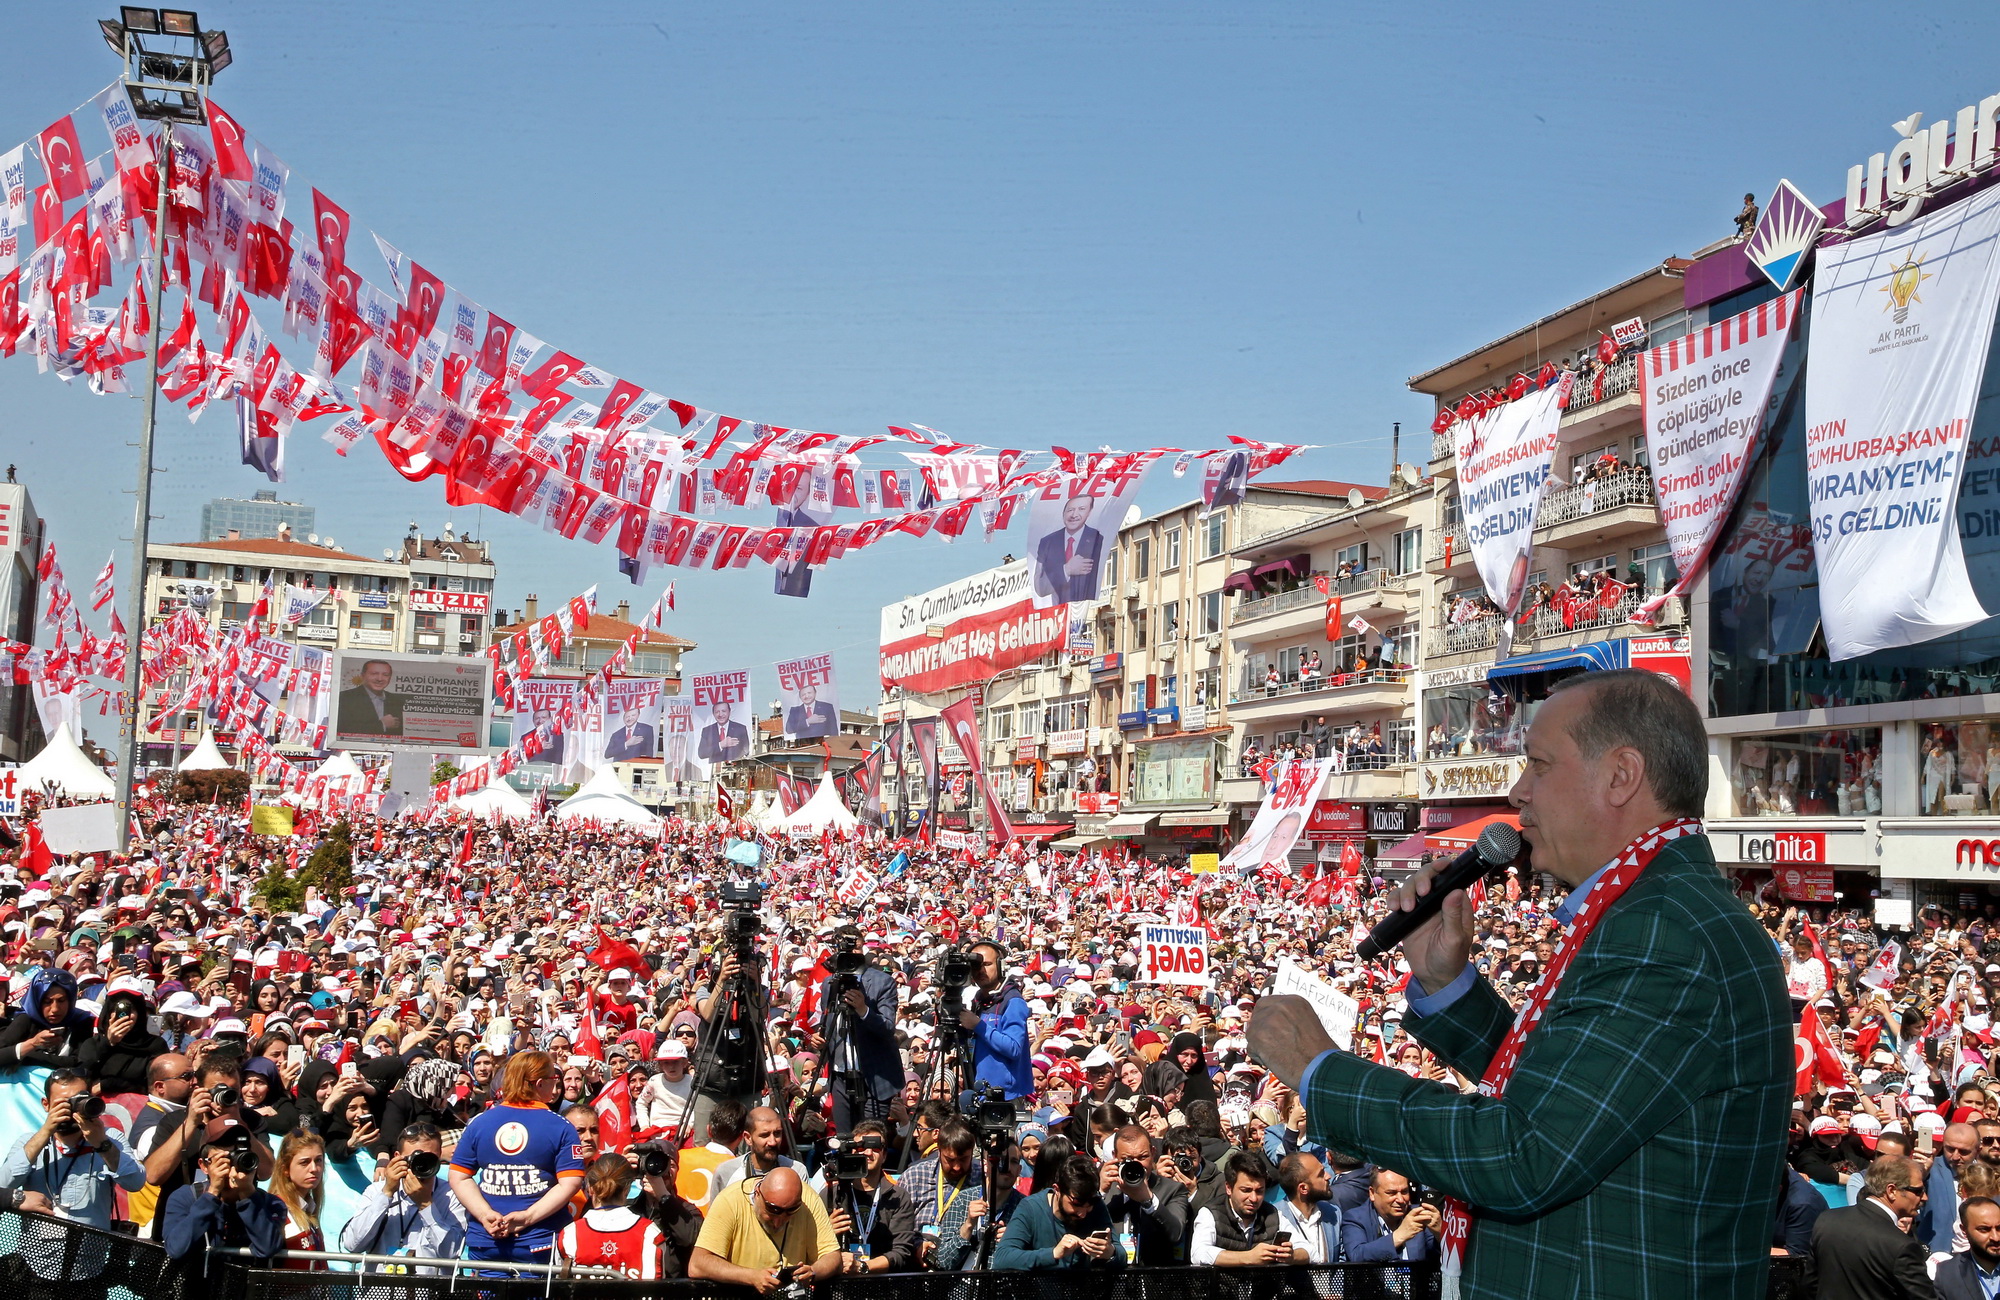 Tổng thống Thổ Nhĩ Kỳ Tayyip Erdogan đang kêu gọi cử tri ủng hộ tham gia cuộc trưng cầu ý dân về việc sửa đổi Hiến pháp. Ông nhấn mạnh nếu đa số người dân nói “Có” trong cuộc trưng cầu thì điều đó sẽ “mở đường” cho việc tái áp dụng hình phạt tử hình và mở rộng quyền lực cho tổng thống. Ông Erdogan cũng từng cam kết về sự ổn định, an toàn và phát triển kinh tế nếu giành chiến thắng trong cuộc trưng cầu dân ý. (Ảnh: EPA/TTXVN)